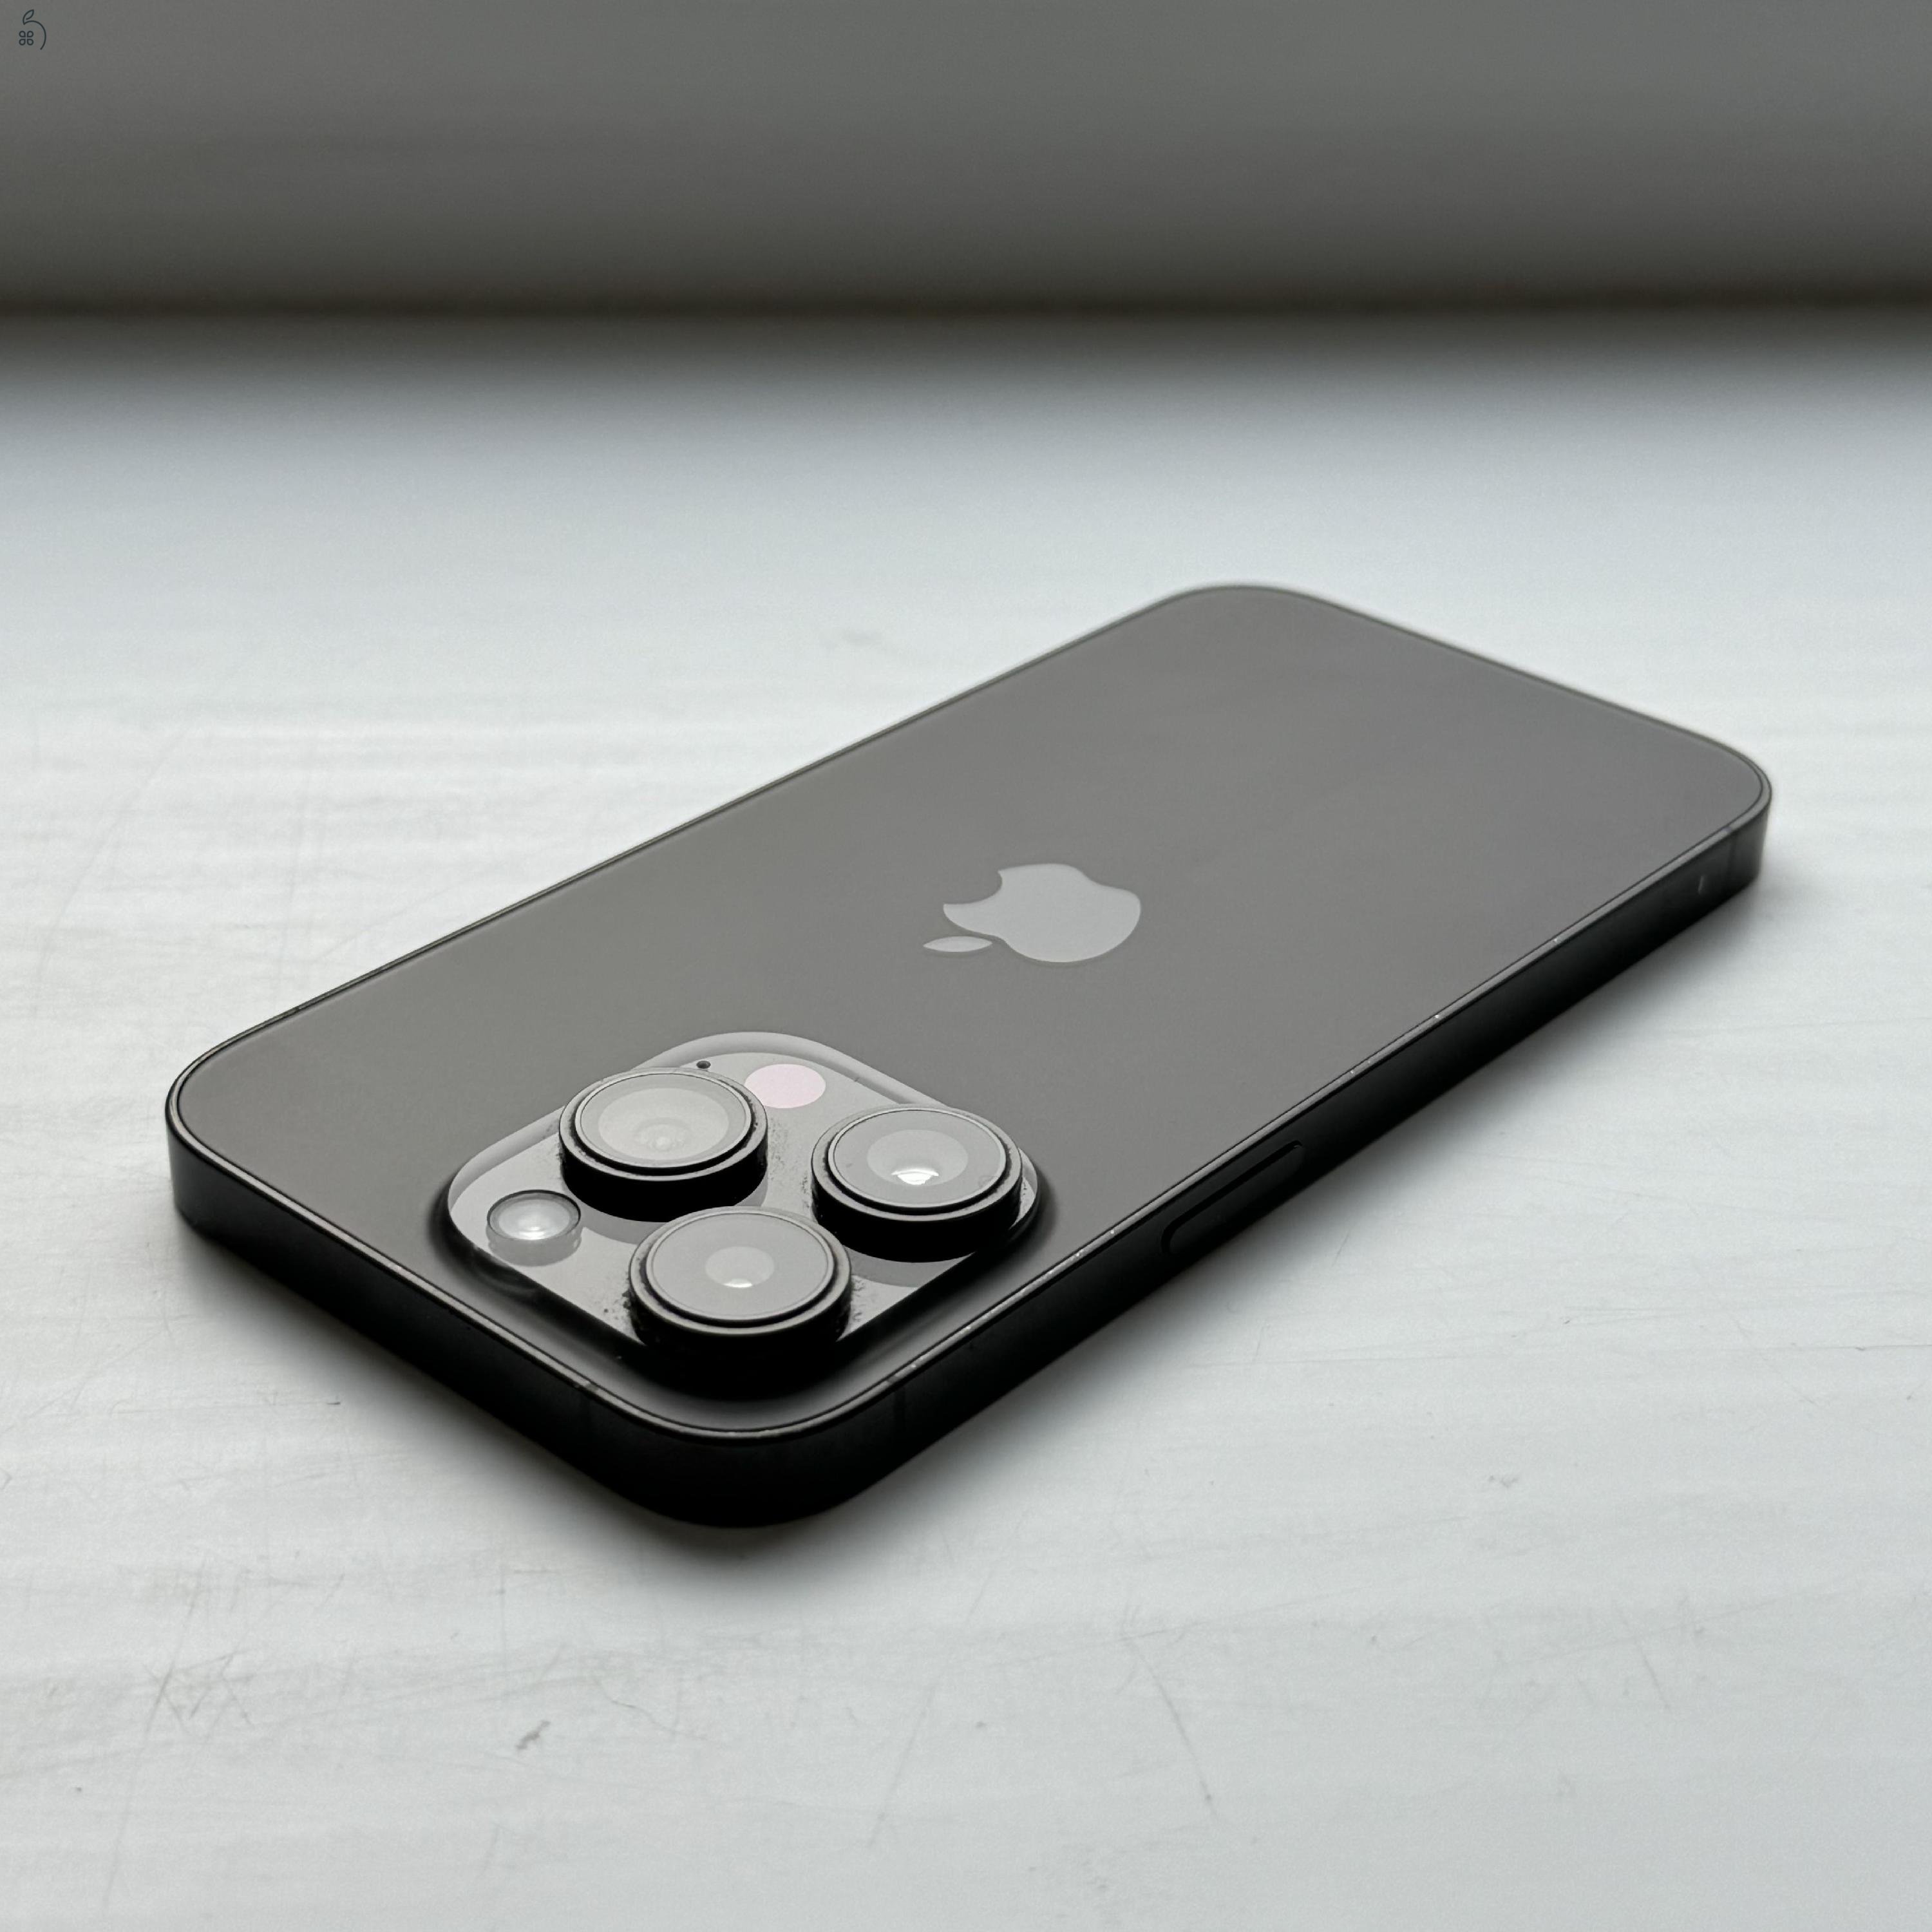 KARCMENTES iPhone 14 Pro 512GB Space Black - Kártyfüggetlen, 1 ÉV GARANCIA, 100% Akkumulátor